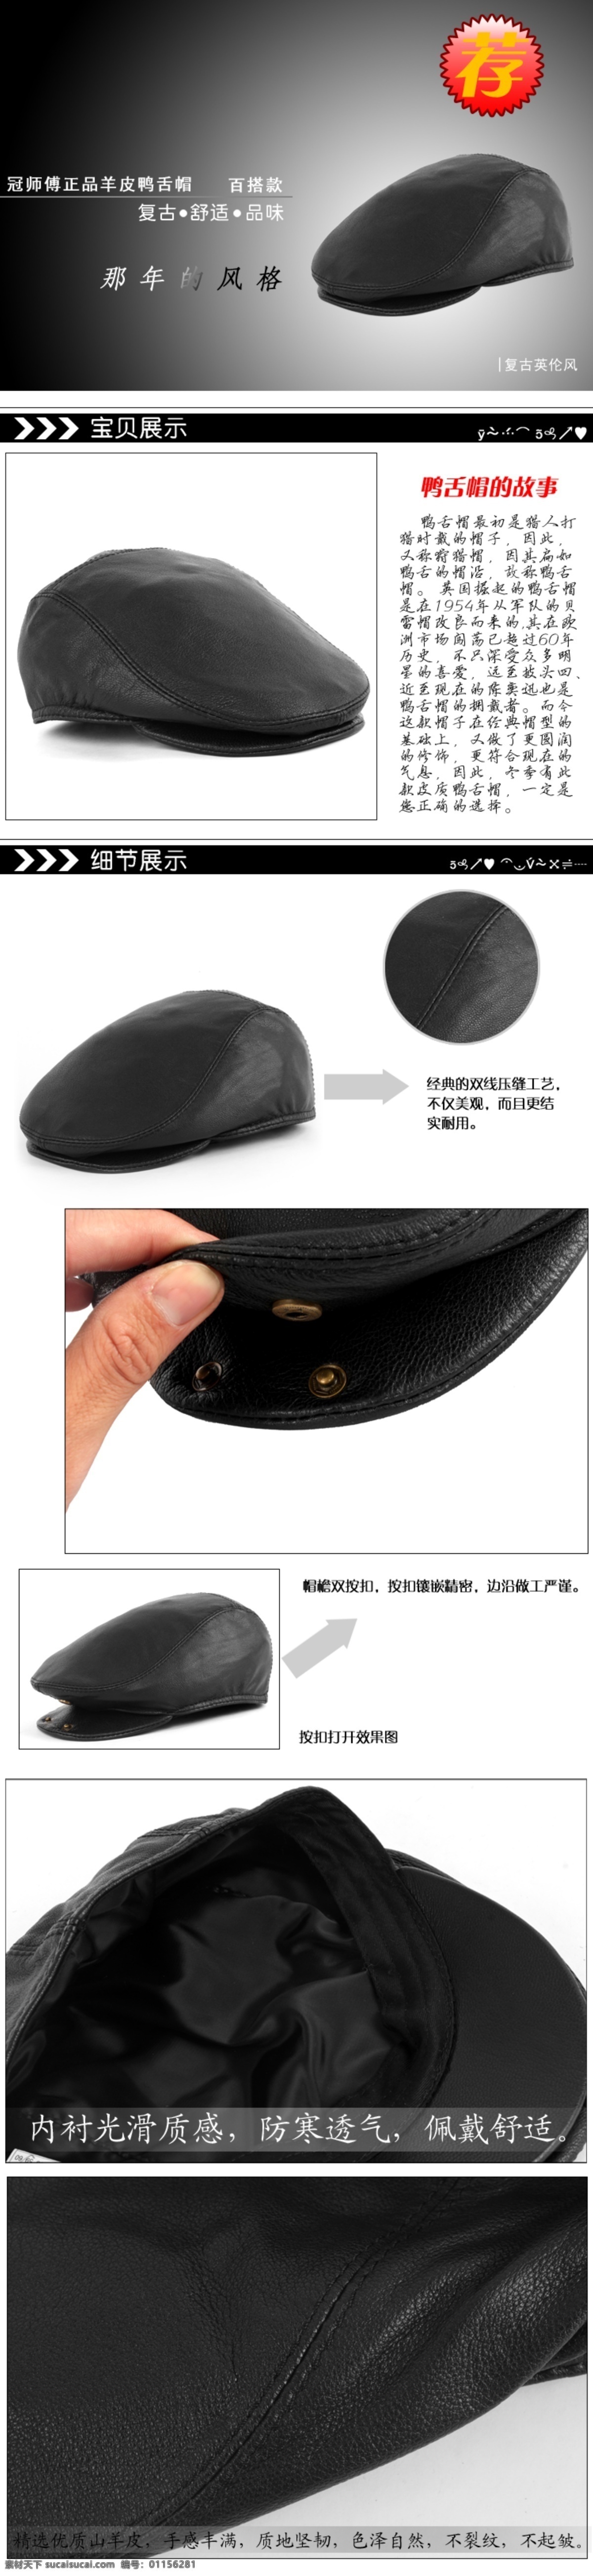 男帽子详情页 描述页 黑色帽子素材 白色